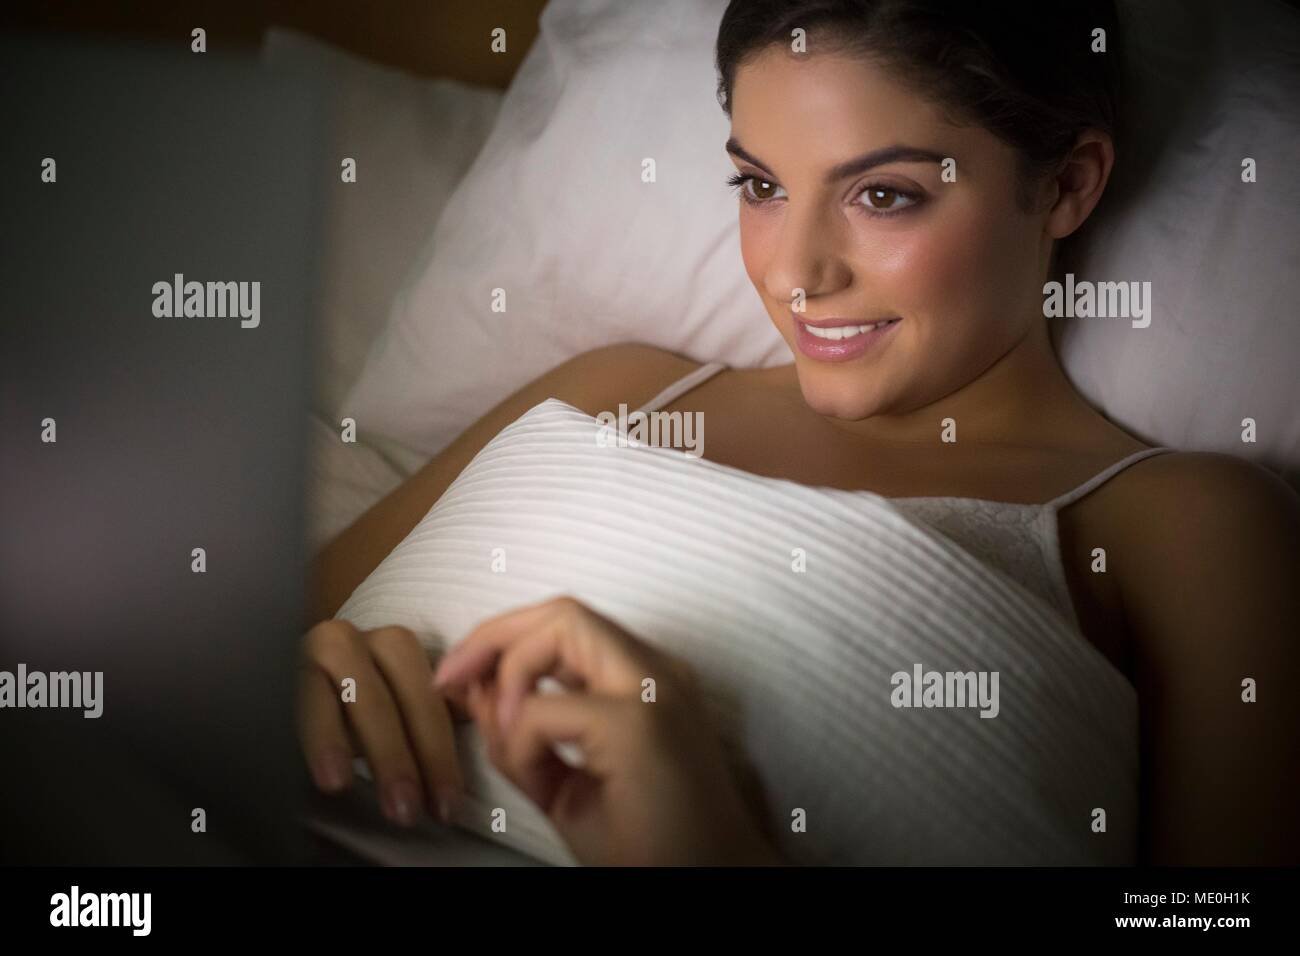 Junge Frau im Bett beobachten Laptop liegen. Stockfoto